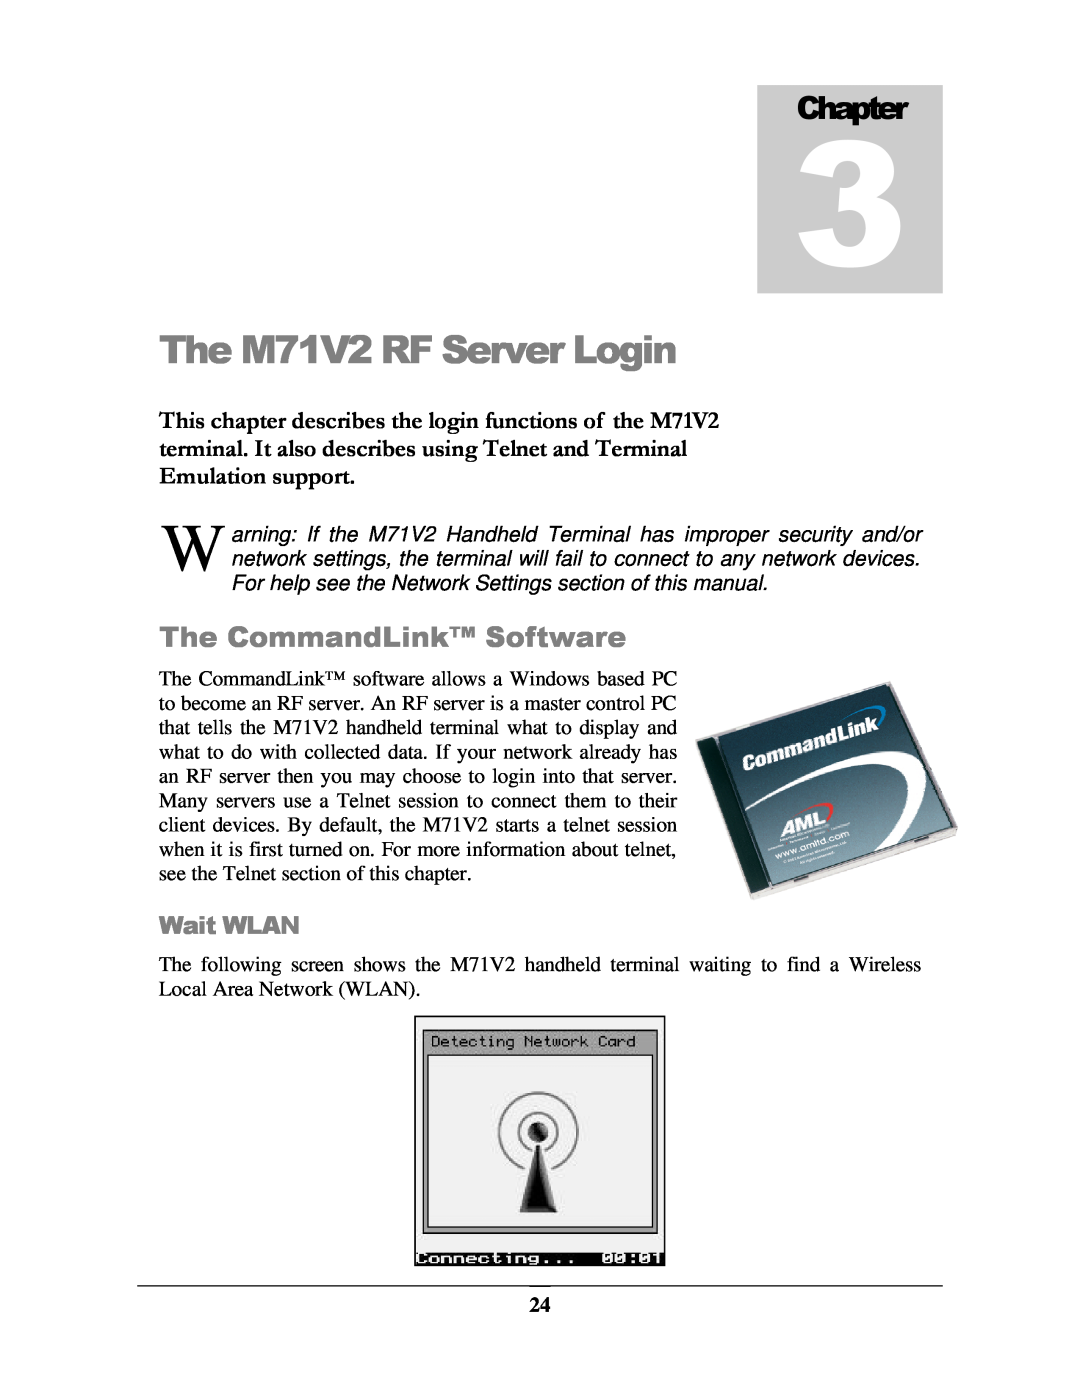 IBM manual The M71V2 RF Server Login, The CommandLink Software, Wait WLAN, Chapter 